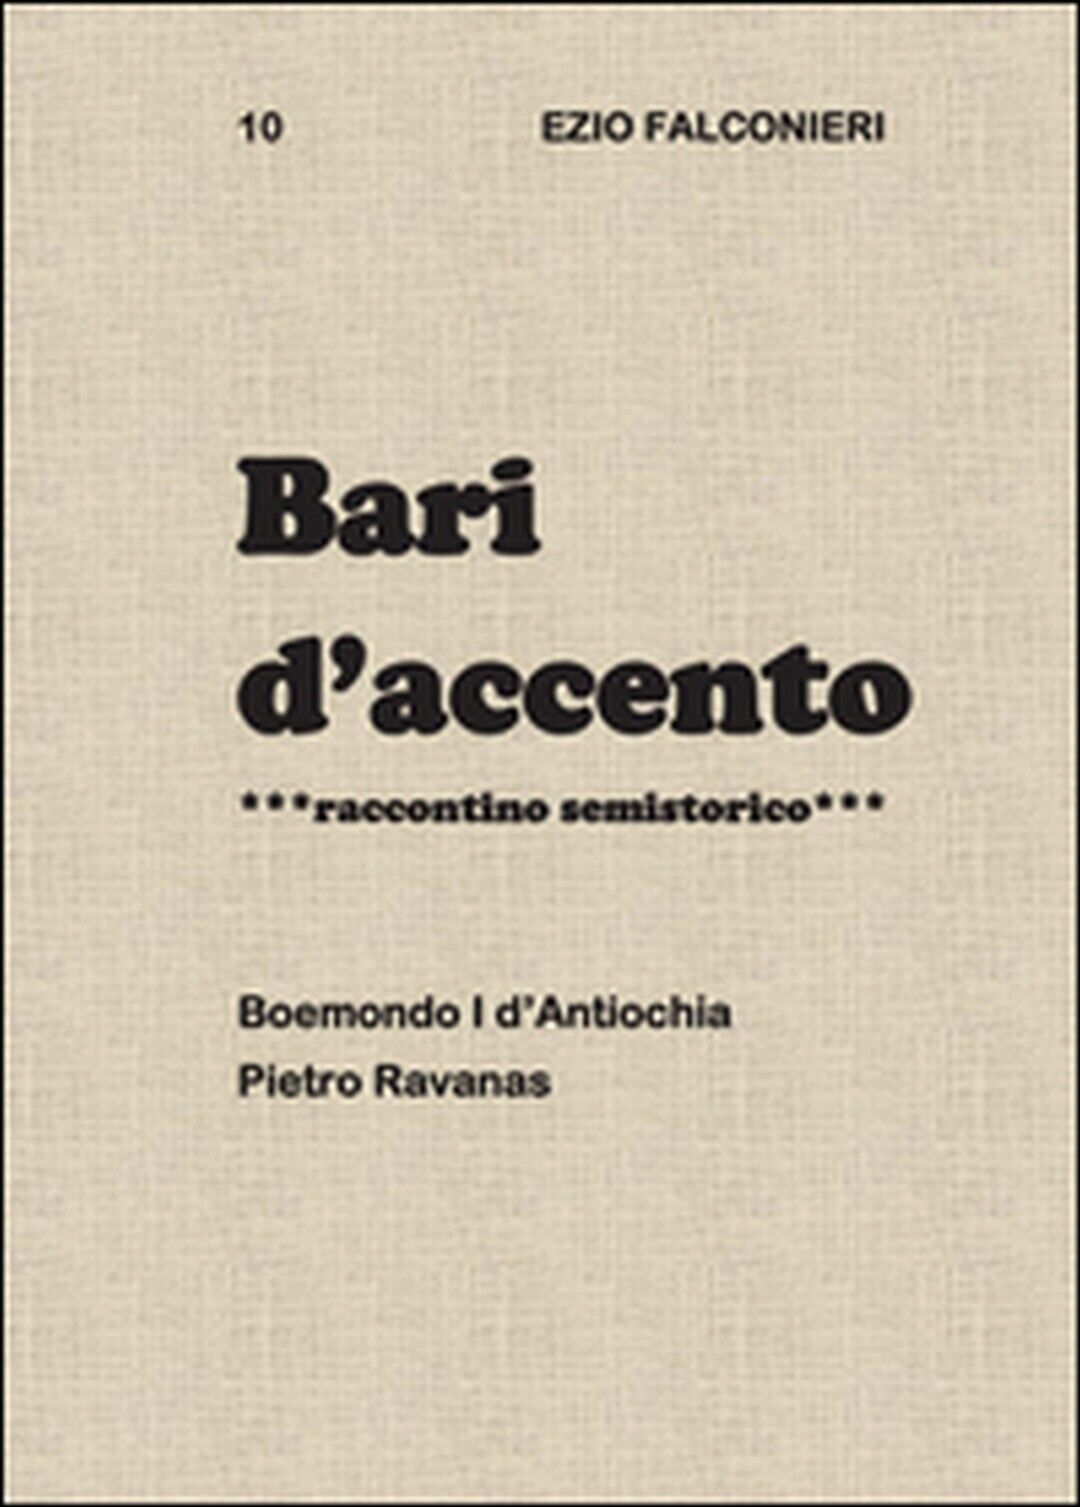 Bari d'accento Vol.10  di Ezio Falconieri,  2015,  Youcanprint libro usato